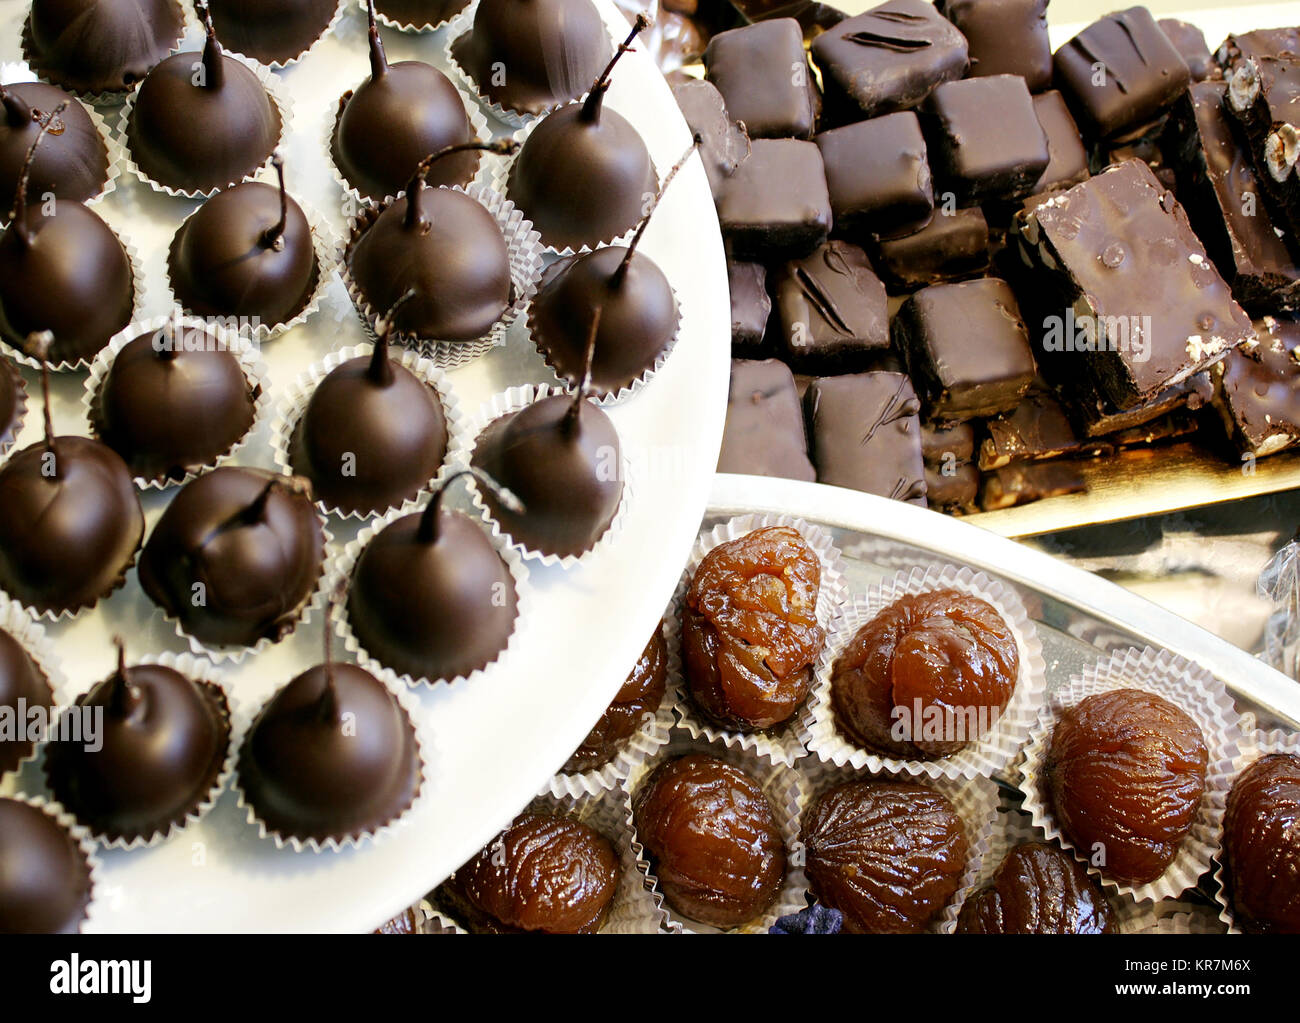 Dettaglio di molte ciliegie al maraschino ricoperto di cioccolato fondente, marron glace e scuro torrone al cioccolato Foto Stock